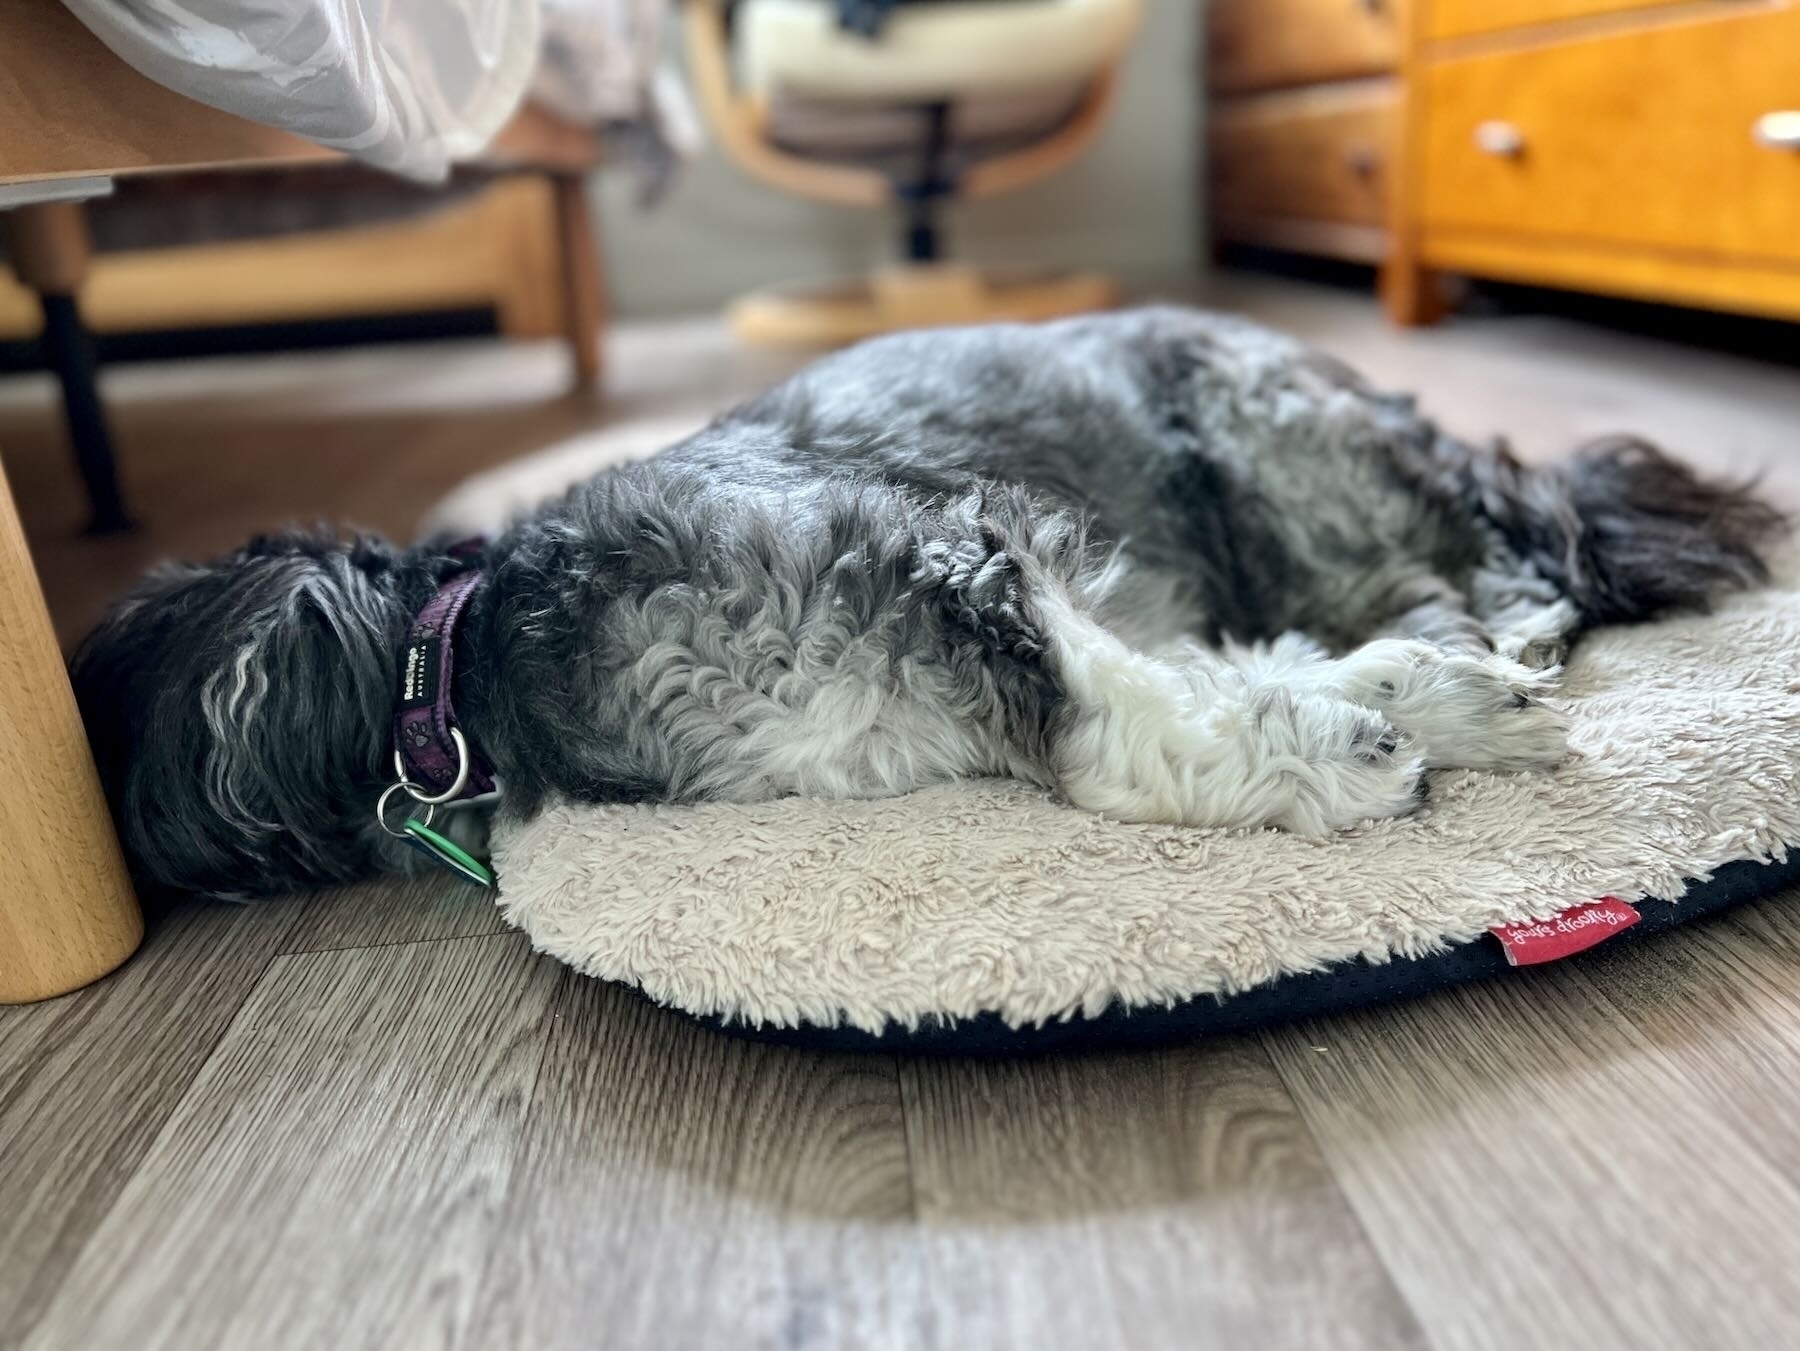 Old black dog fast asleep on rug and floor. 